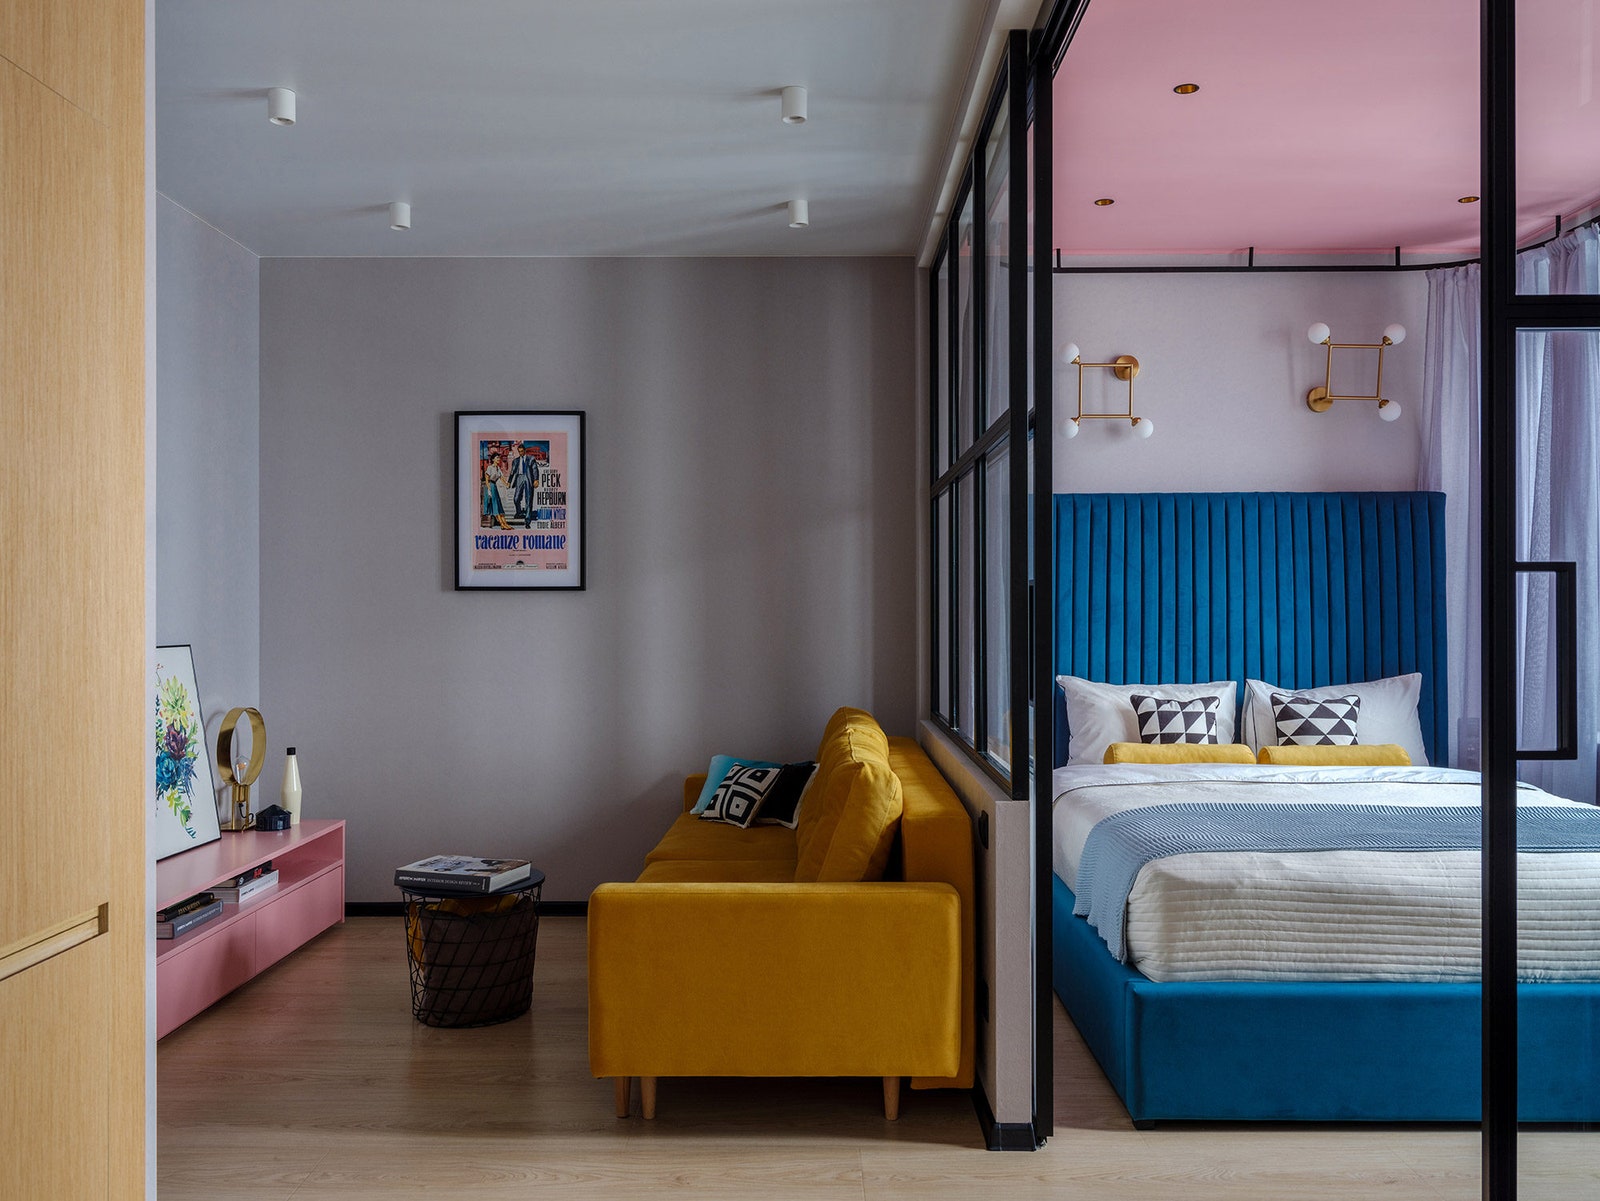 Вид на гостиную и спальню в квартире по дизайну Ольги Луис. Обои Inspire ламинат Leroy Merlin бра над кроватью сделаны...